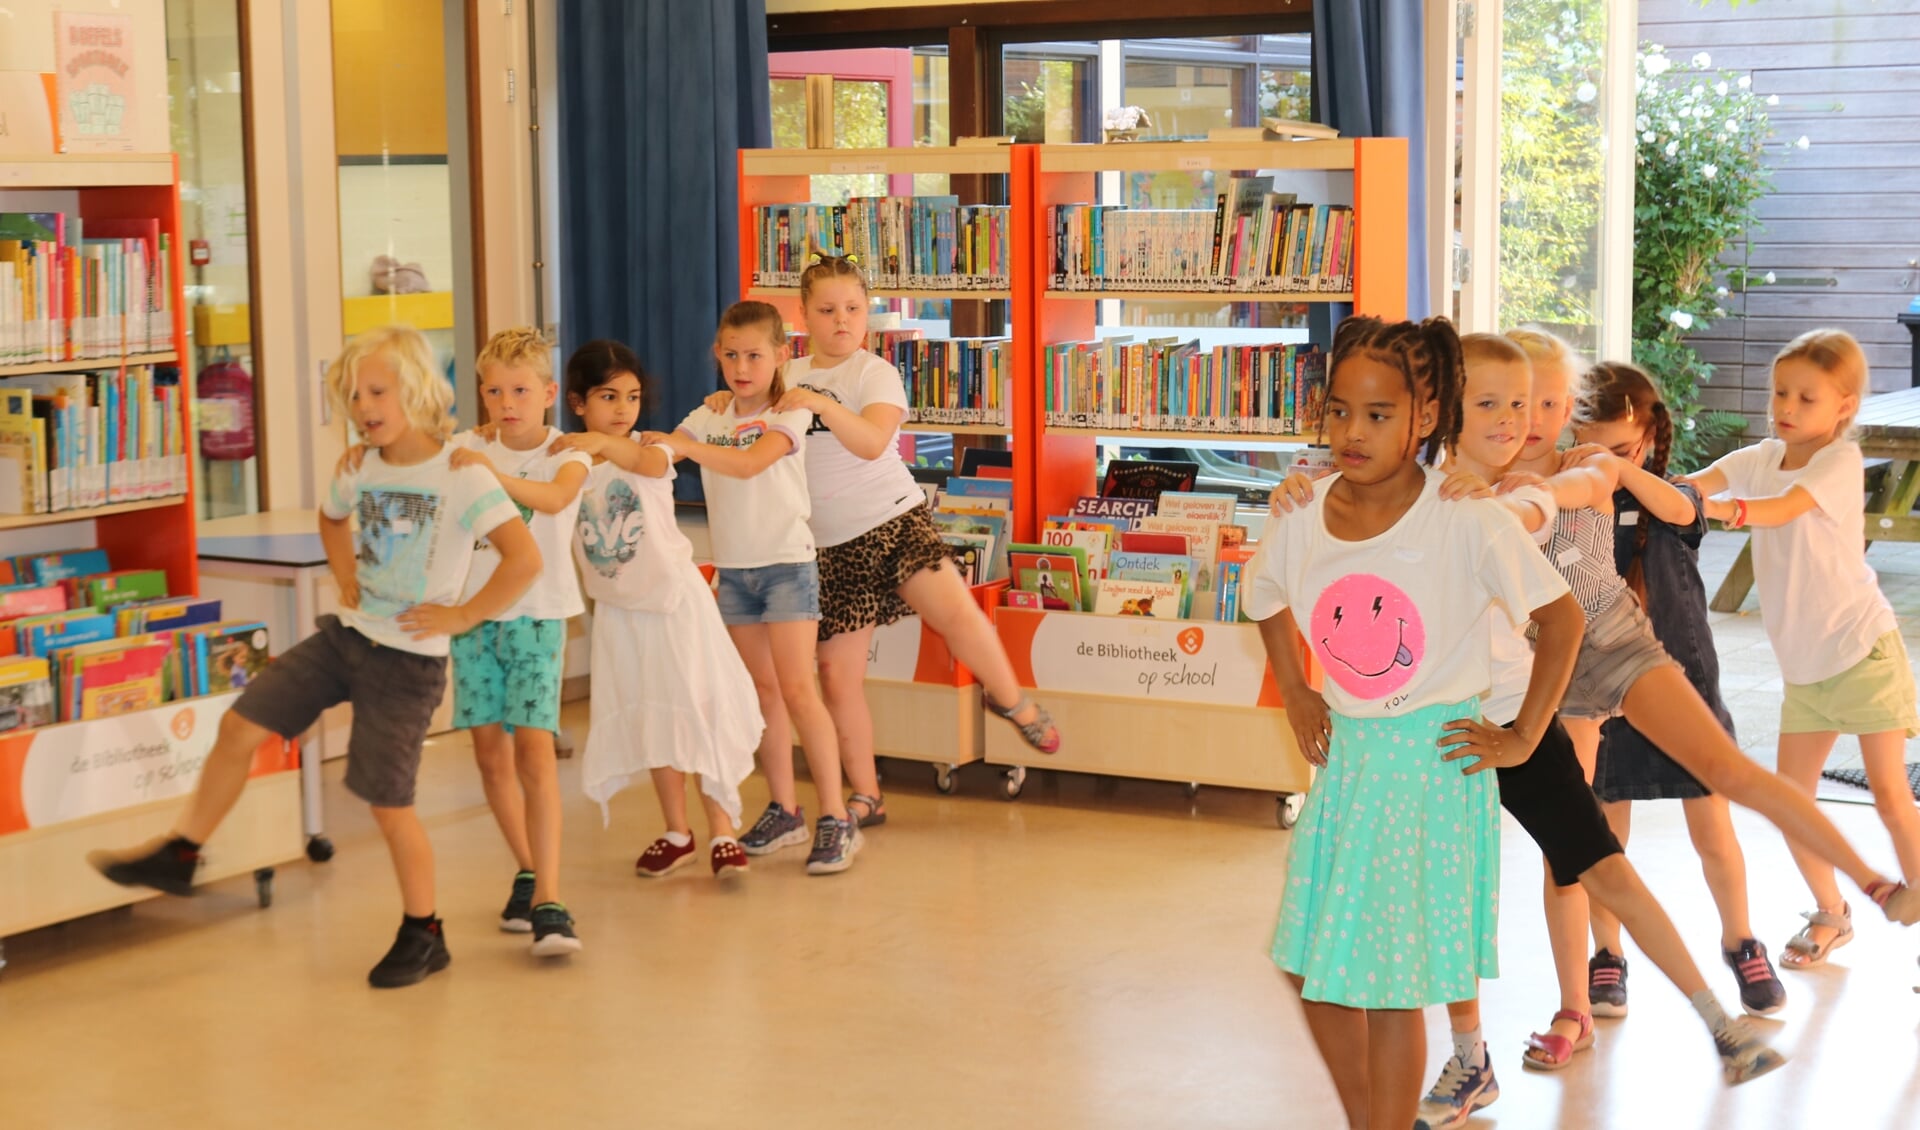 Leerlingen zijn druk bezig met danspasjes voor de grote uitvoering. Foto: Arjen Dieperink